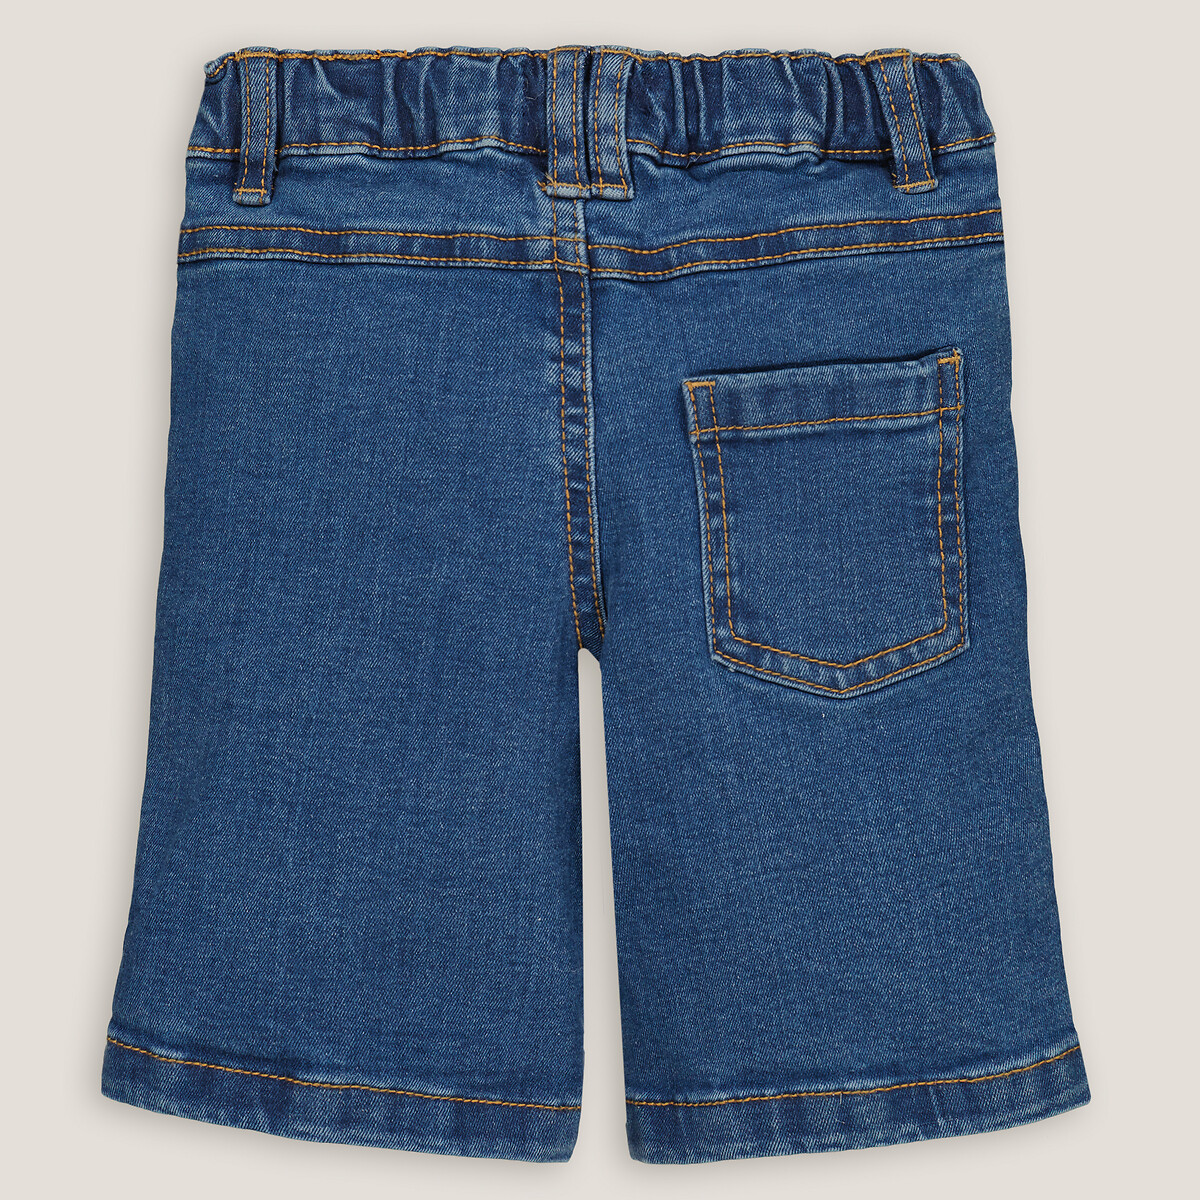 Шорты Из джинсовой ткани 1 год - 74 см синий LaRedoute, размер 1 год - 74 см - фото 4